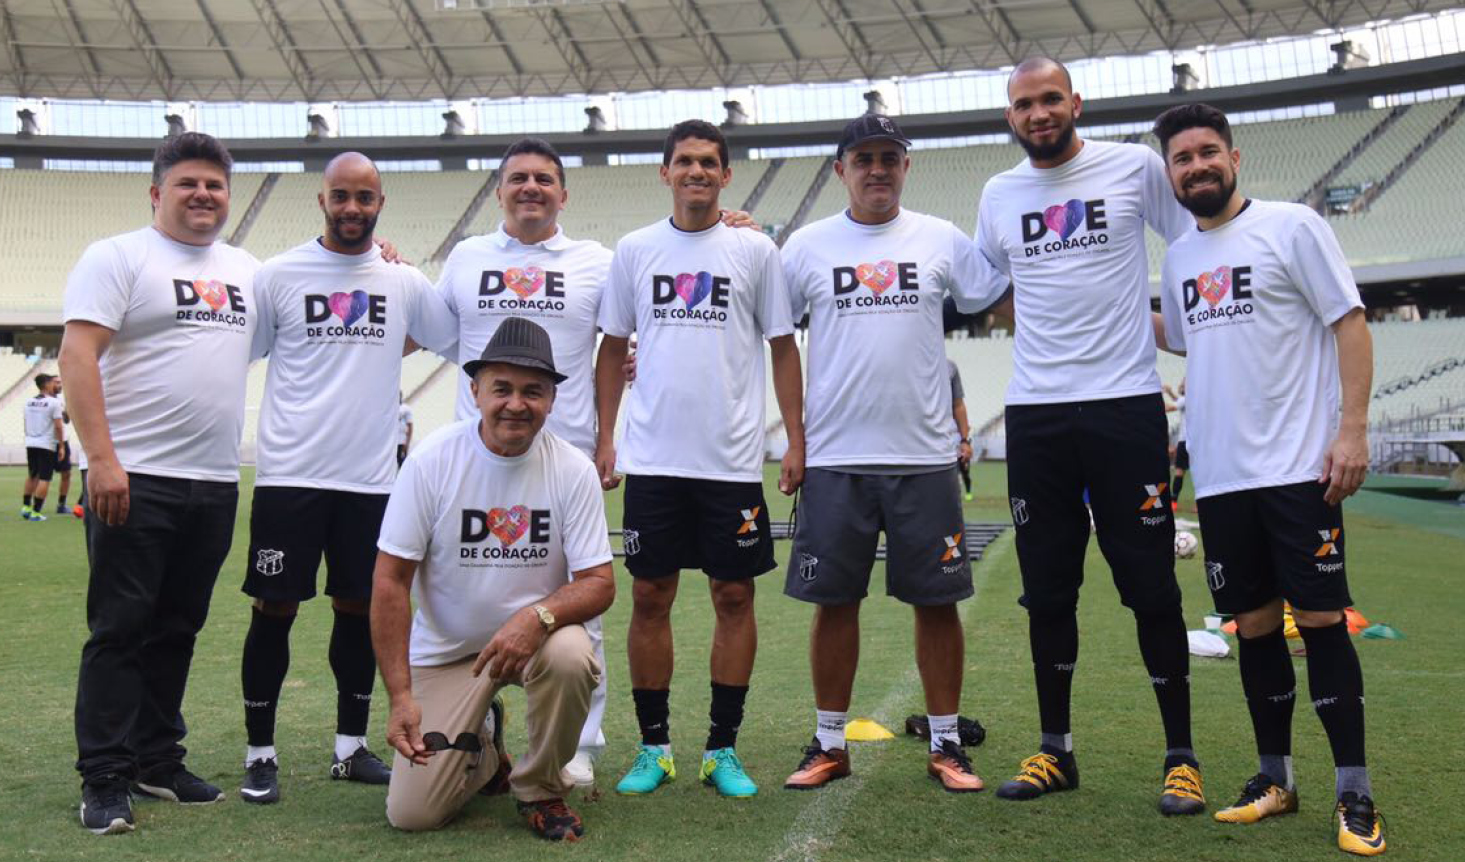 Ceará Sporting Club declara apoio ao Movimento Doe de Coração